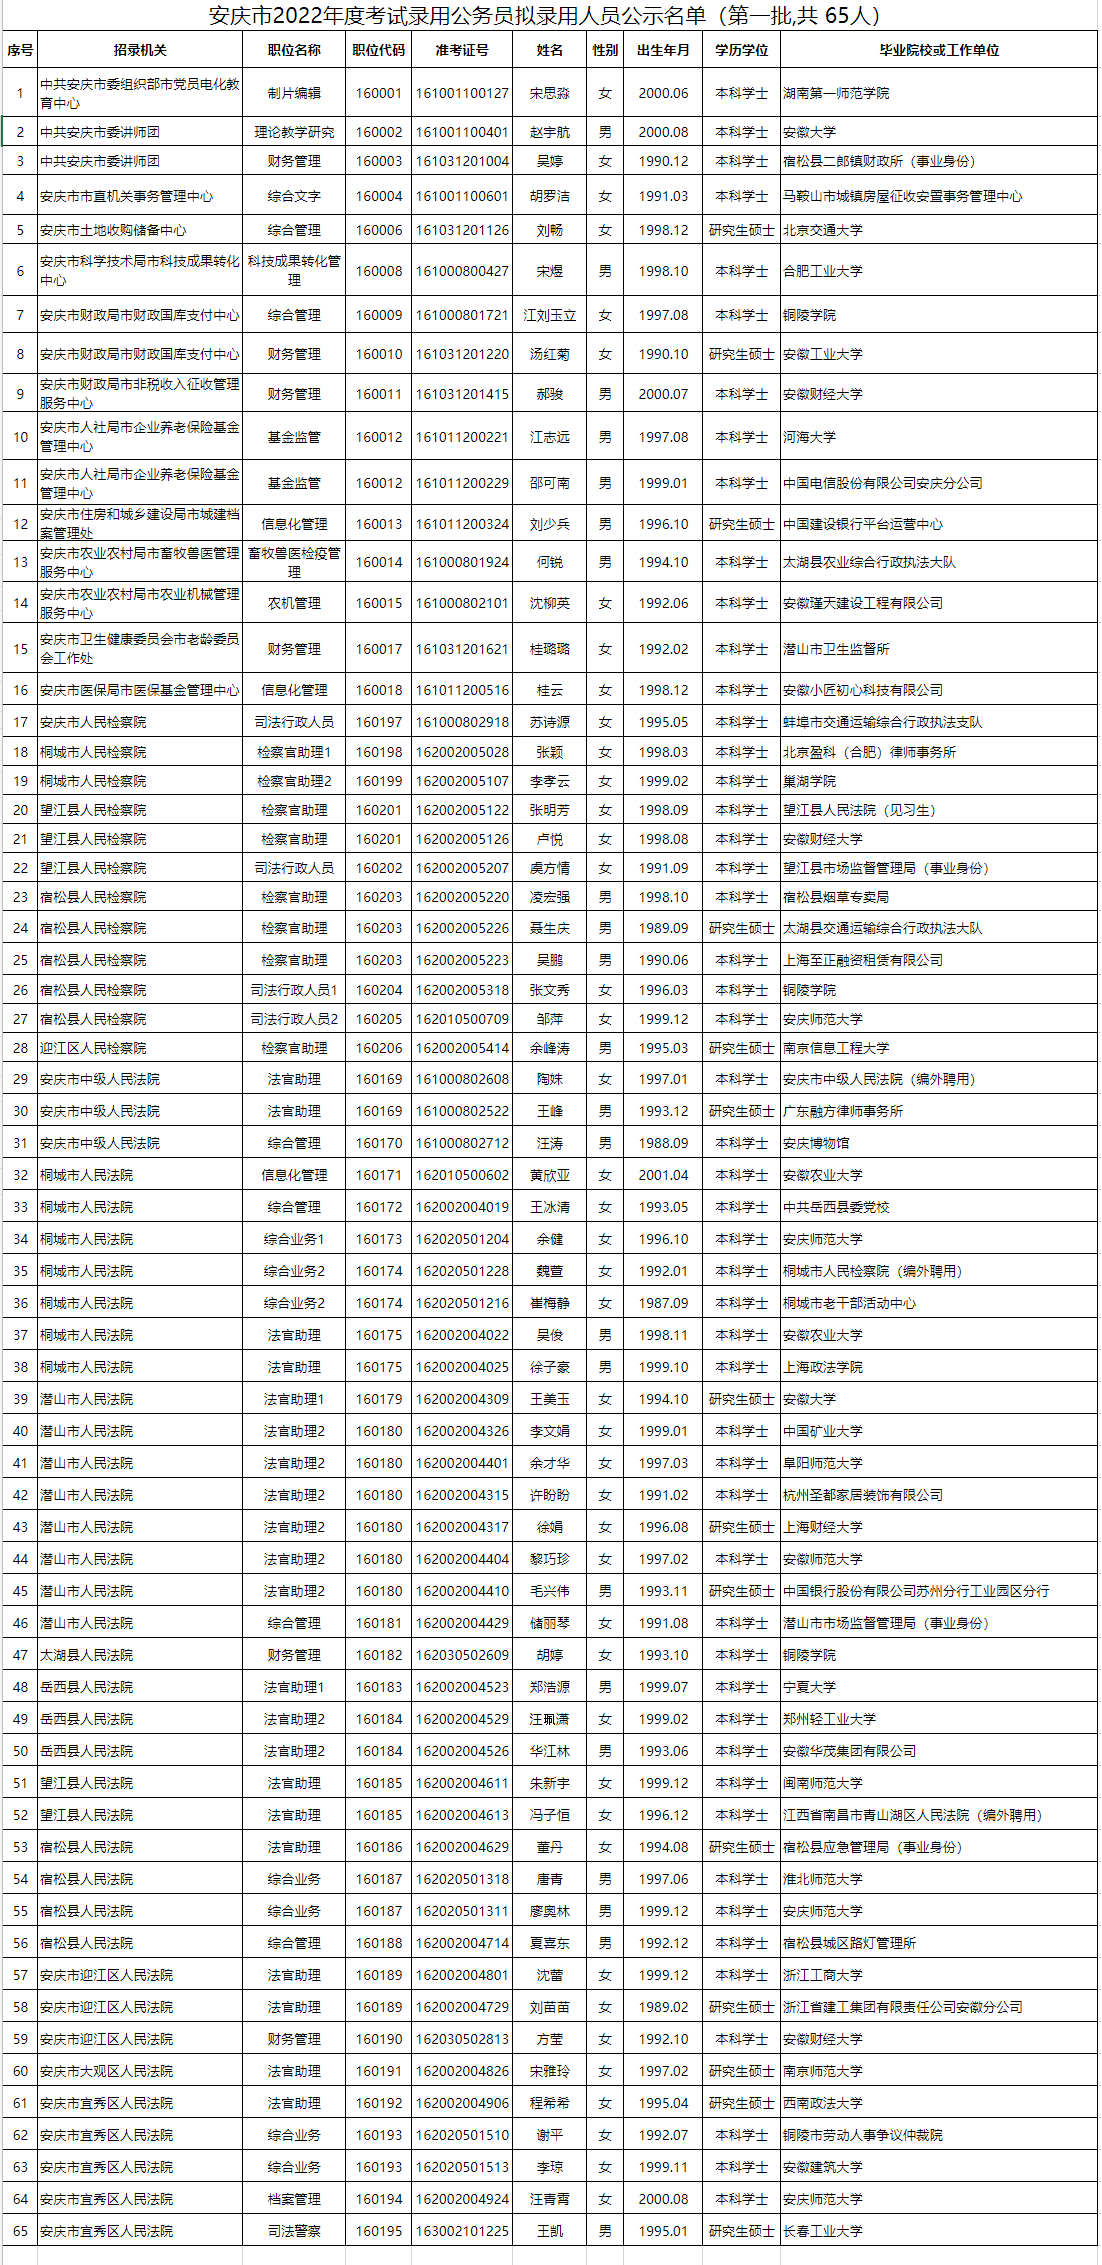 安庆6.5遇难者名单图片